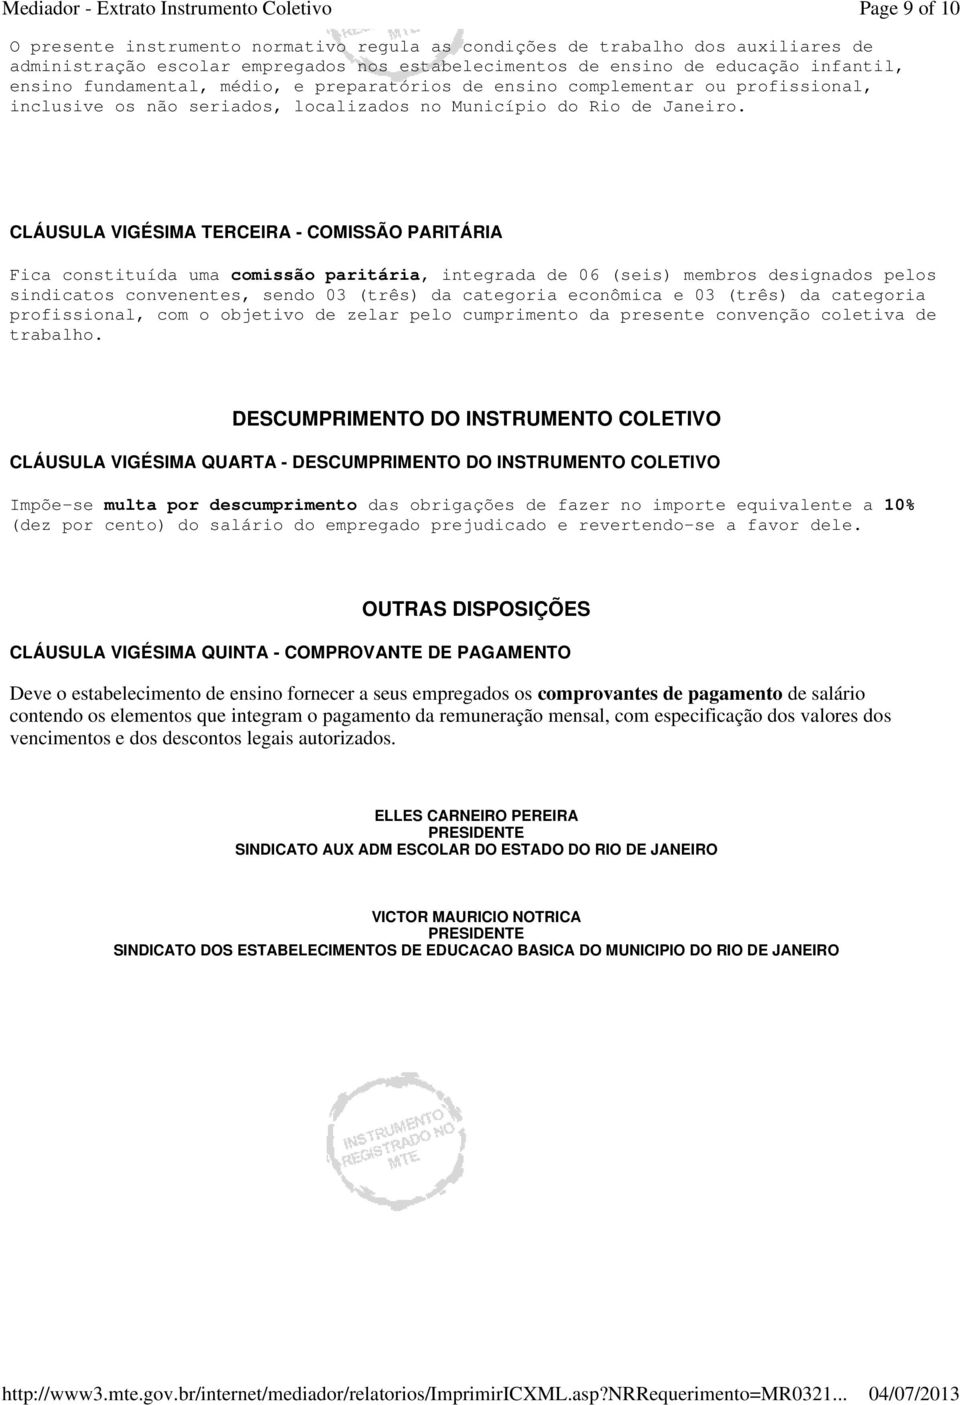 CLÁUSULA VIGÉSIMA TERCEIRA - COMISSÃO PARITÁRIA Fica constituída uma comissão paritária, integrada de 06 (seis) membros designados pelos sindicatos convenentes, sendo 03 (três) da categoria econômica